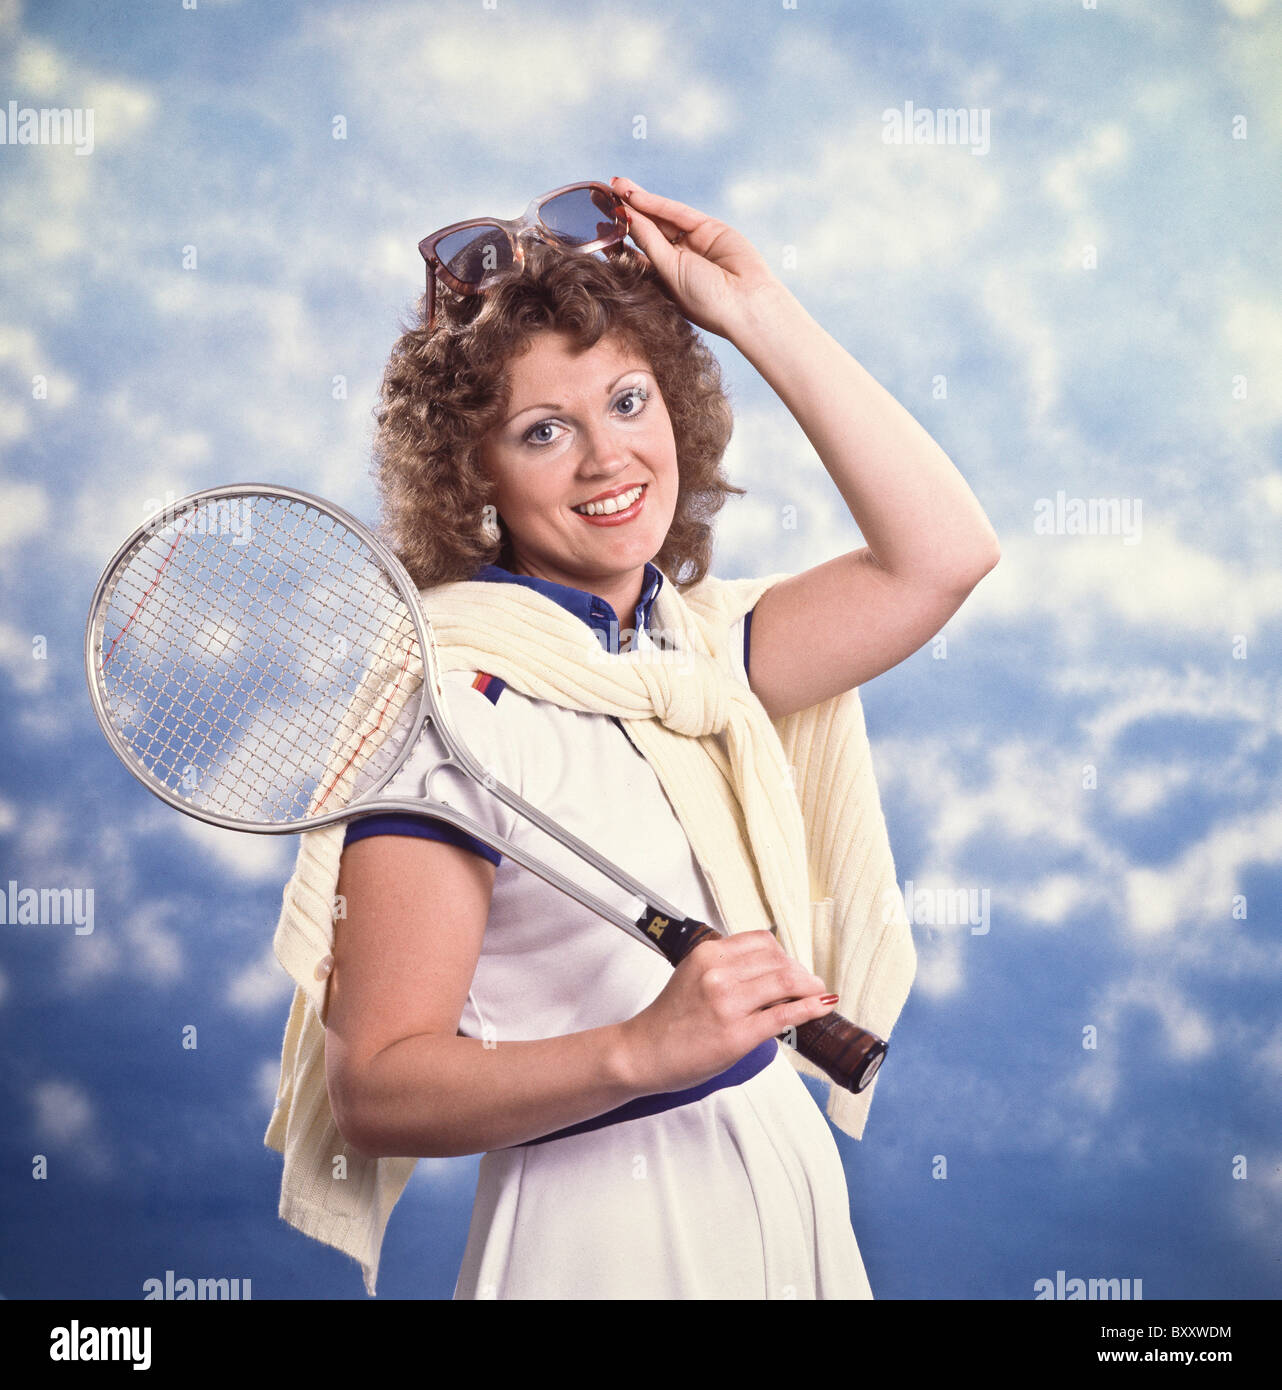 Caucasica donna femmina ragazza sul campo da tennis Foto Stock